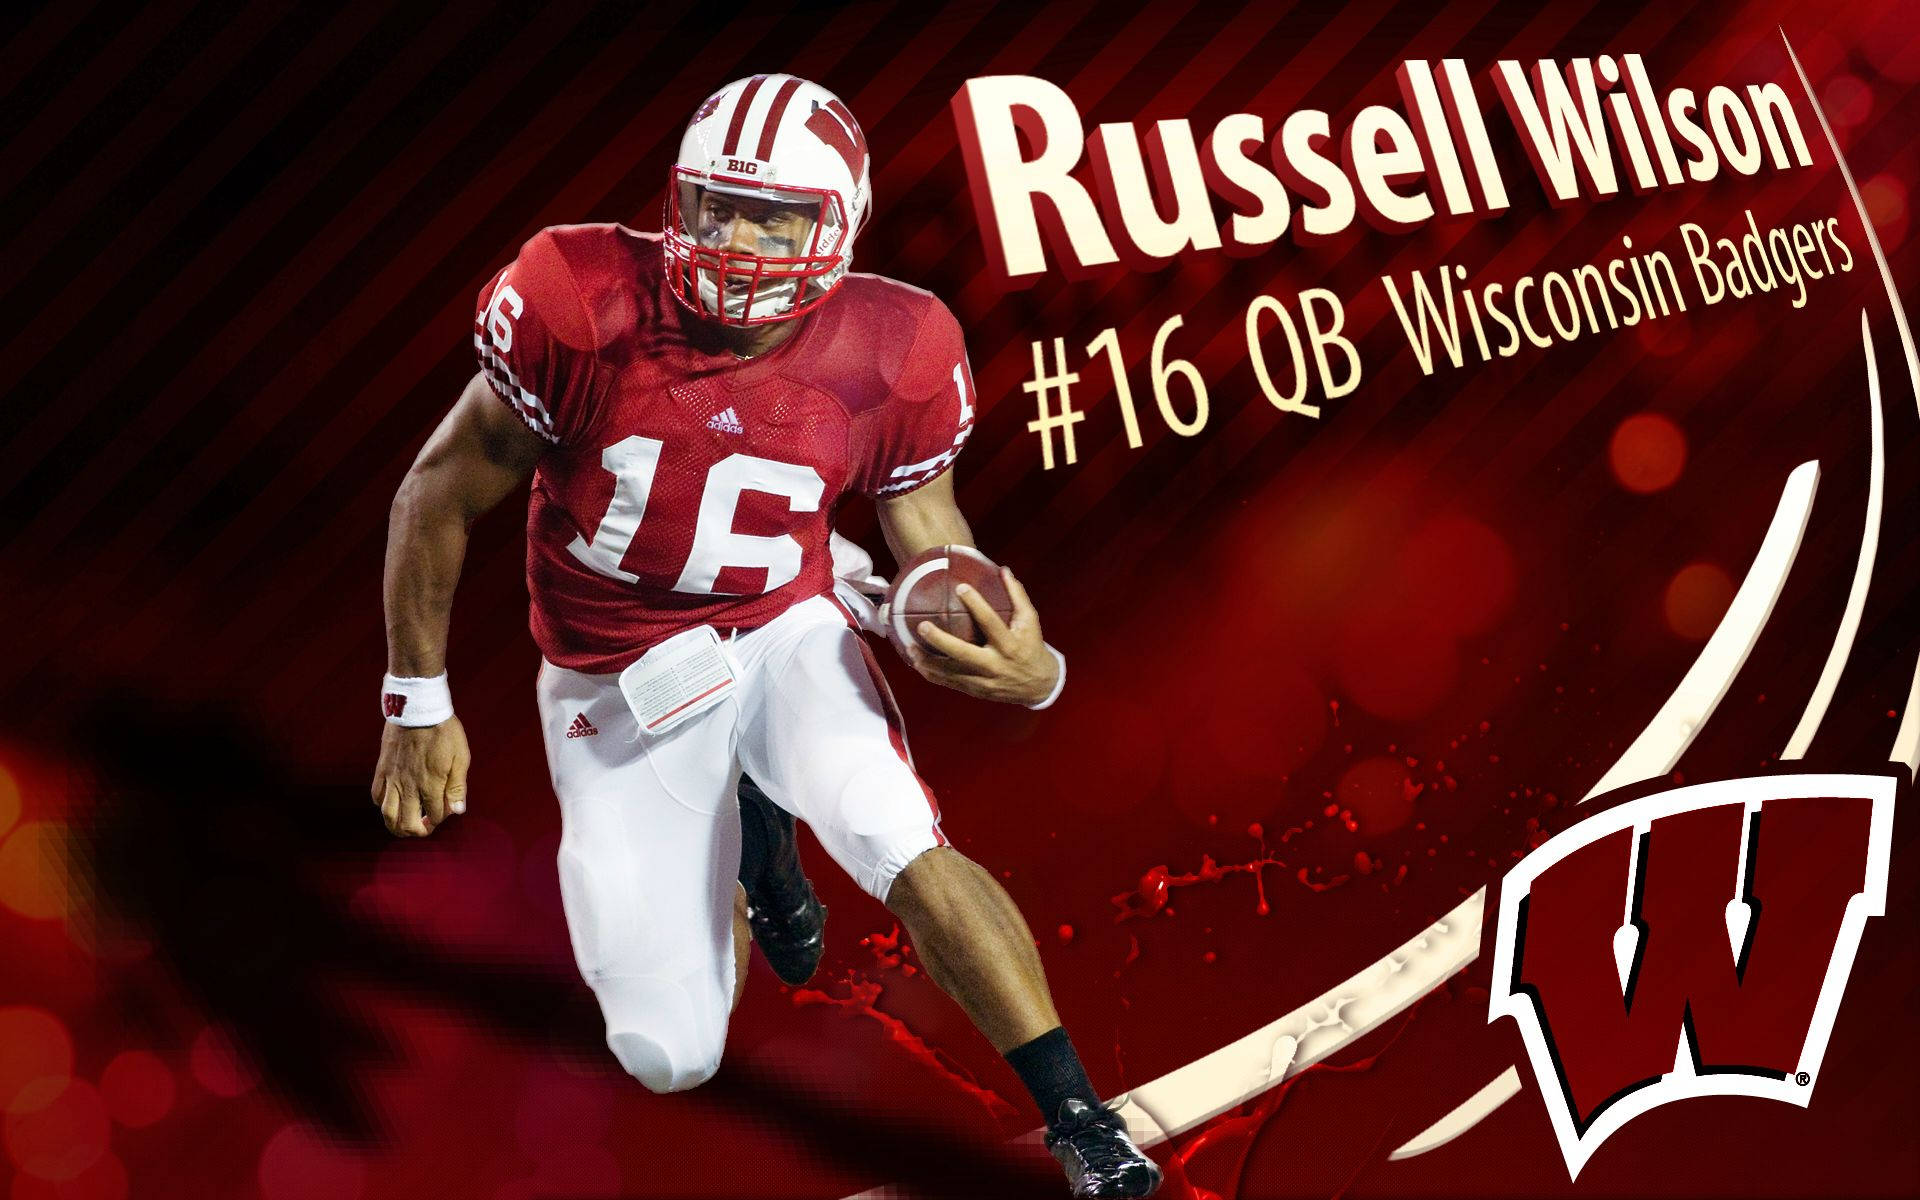 Download Russell Wilson Wisconsin